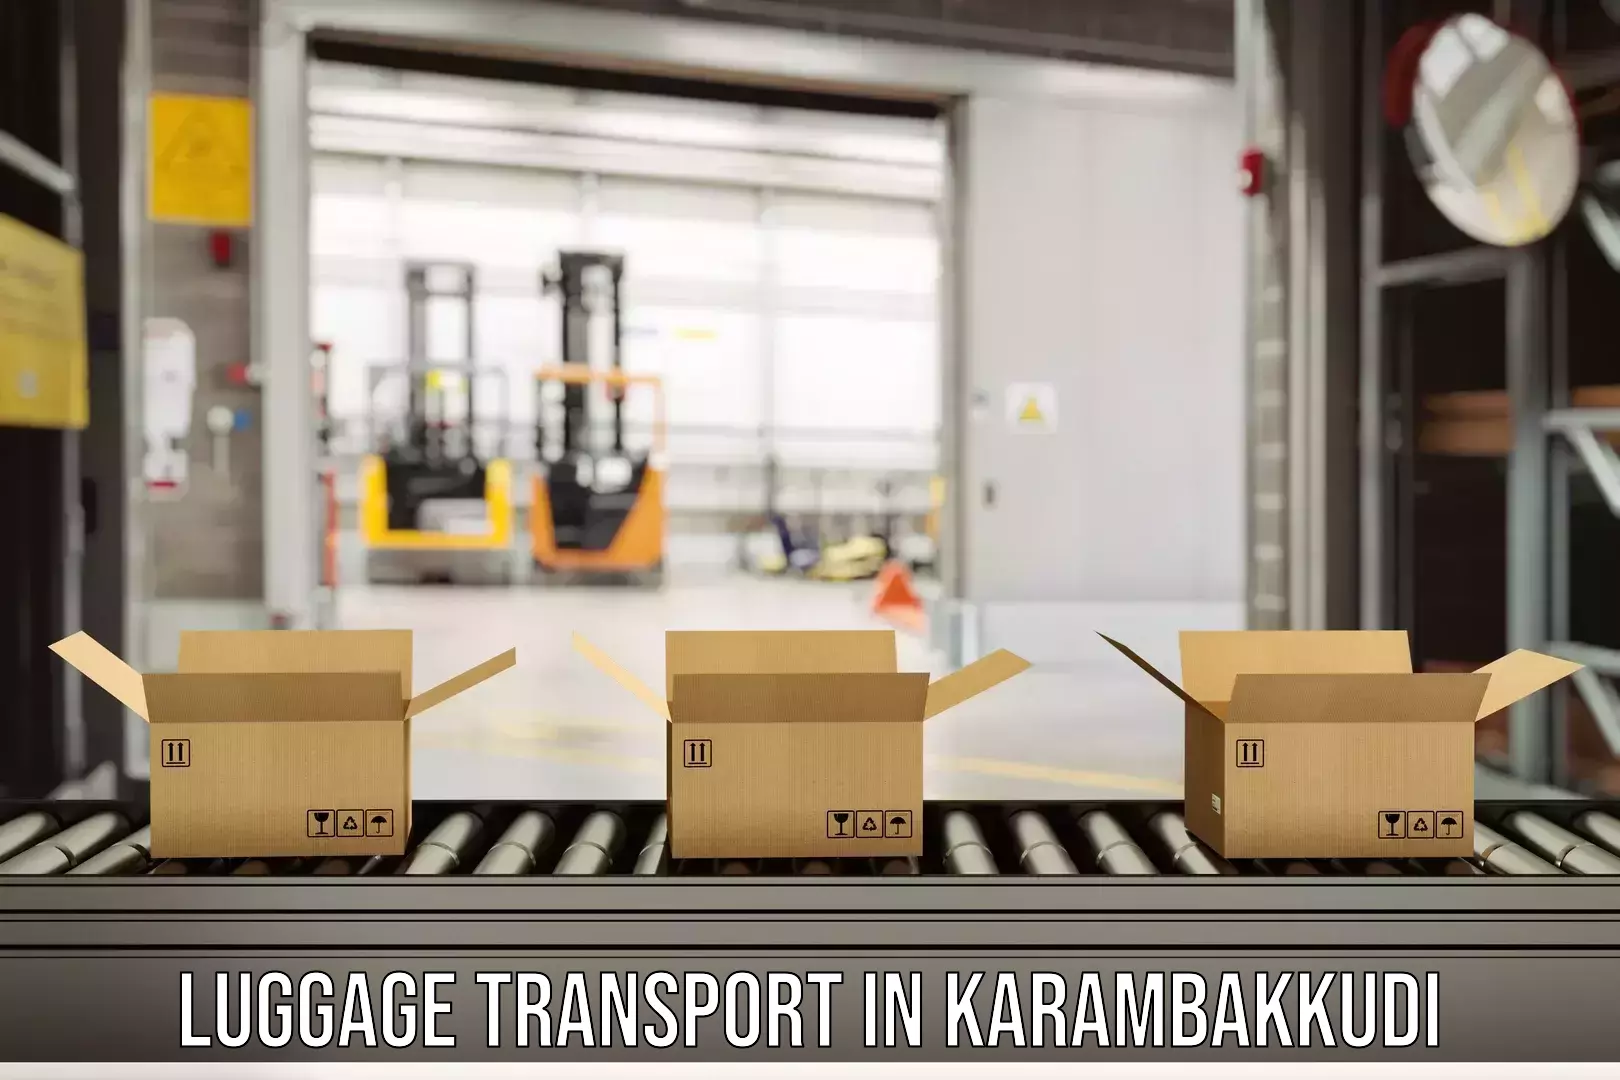 Luggage transport consulting in Karambakkudi